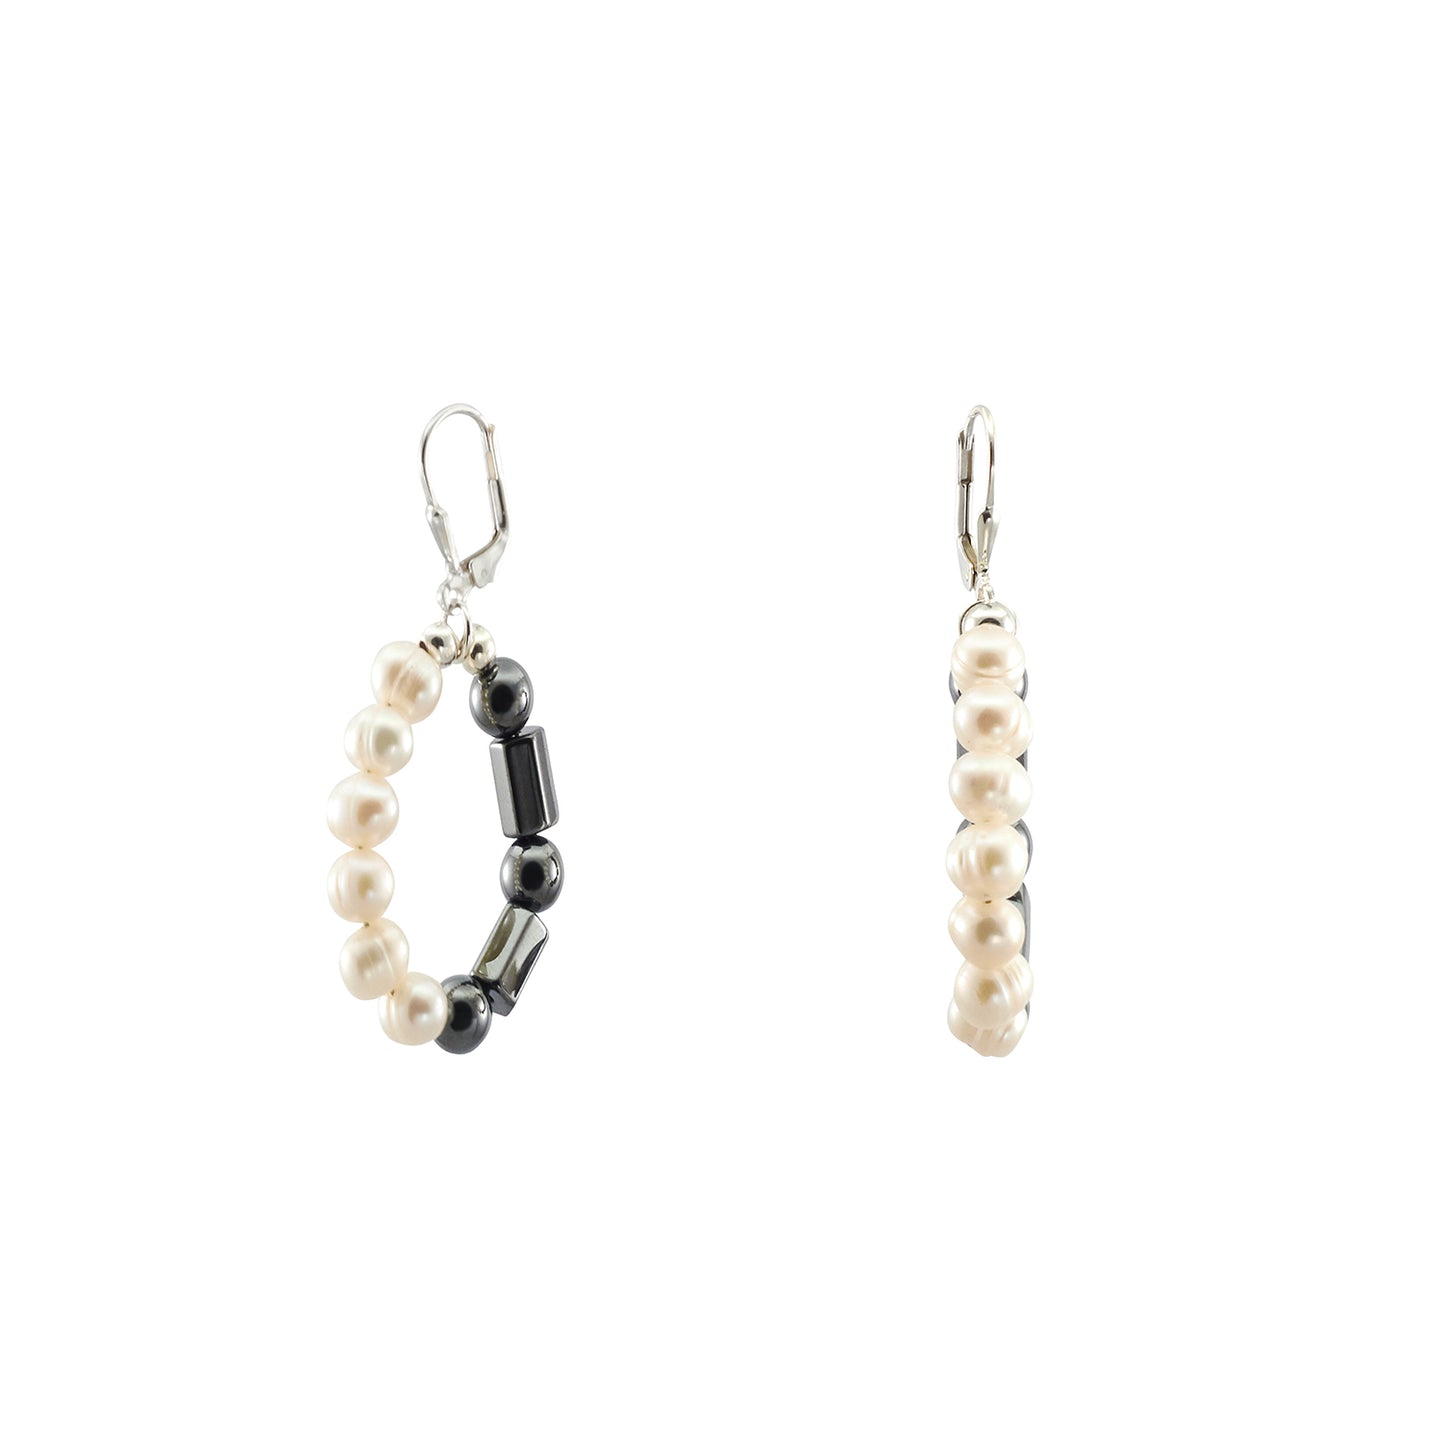 Medium Hoop Earrings with Freshwater Pearls and Hematine